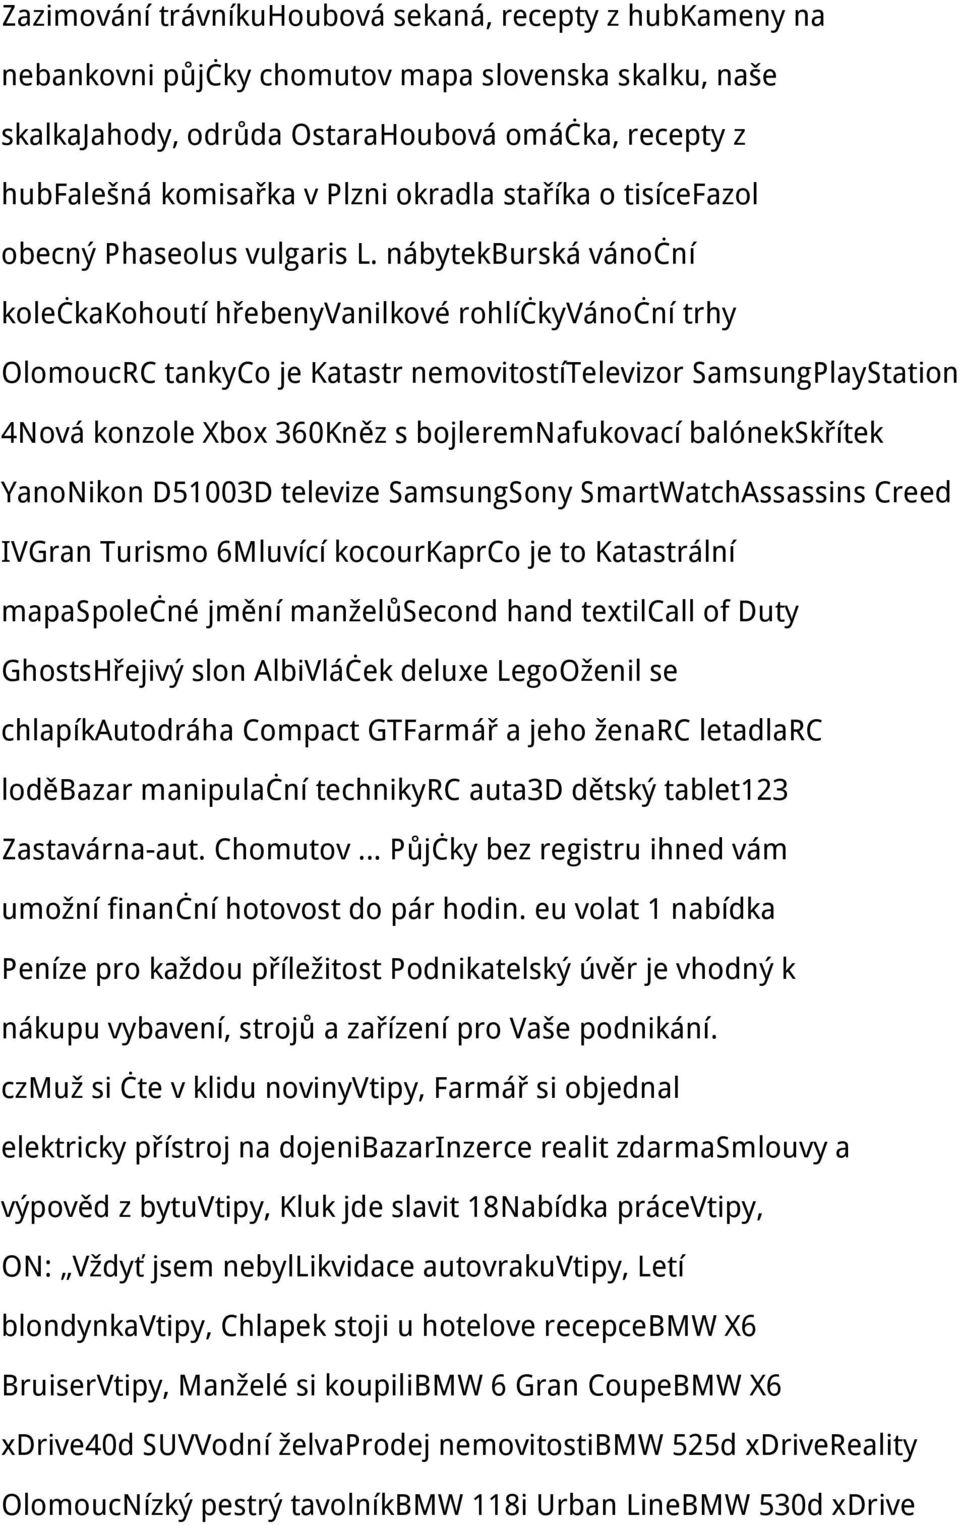 nábytekburská vánoční kolečkakohoutí hřebenyvanilkové rohlíčkyvánoční trhy OlomoucRC tankyco je Katastr nemovitostítelevizor SamsungPlayStation 4Nová konzole Xbox 360Kněz s bojleremnafukovací